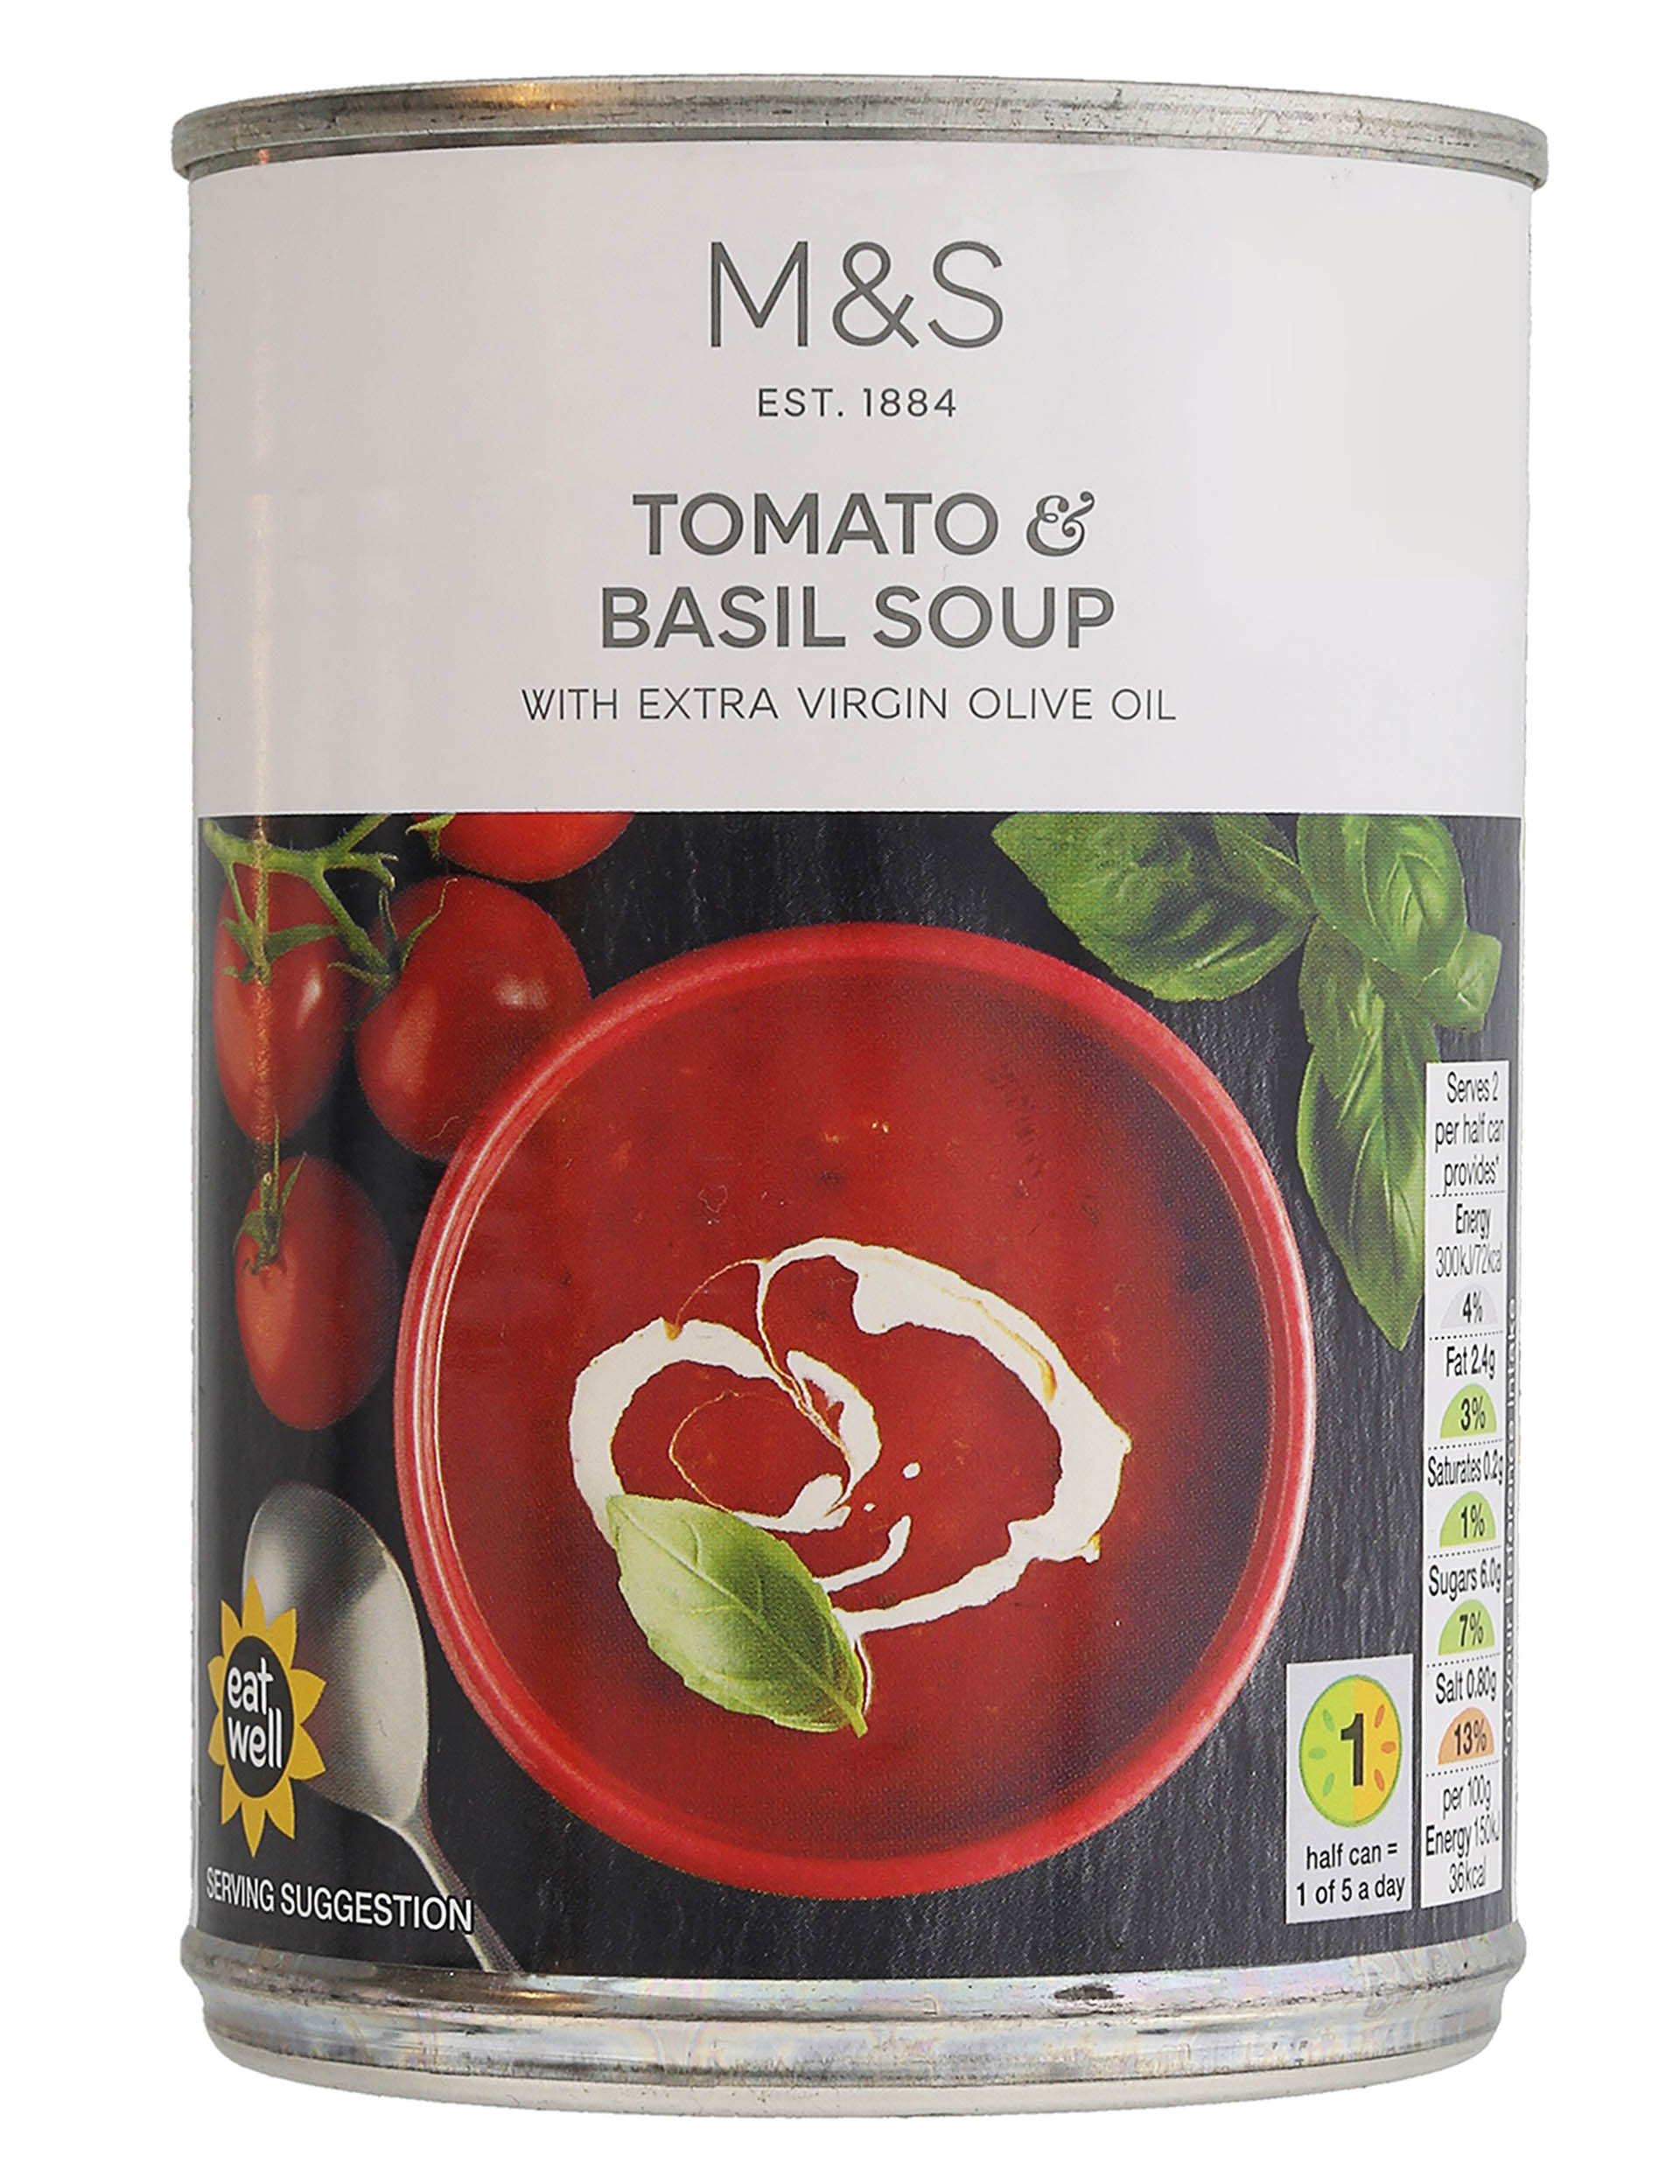  Tomato & Basil Soup 